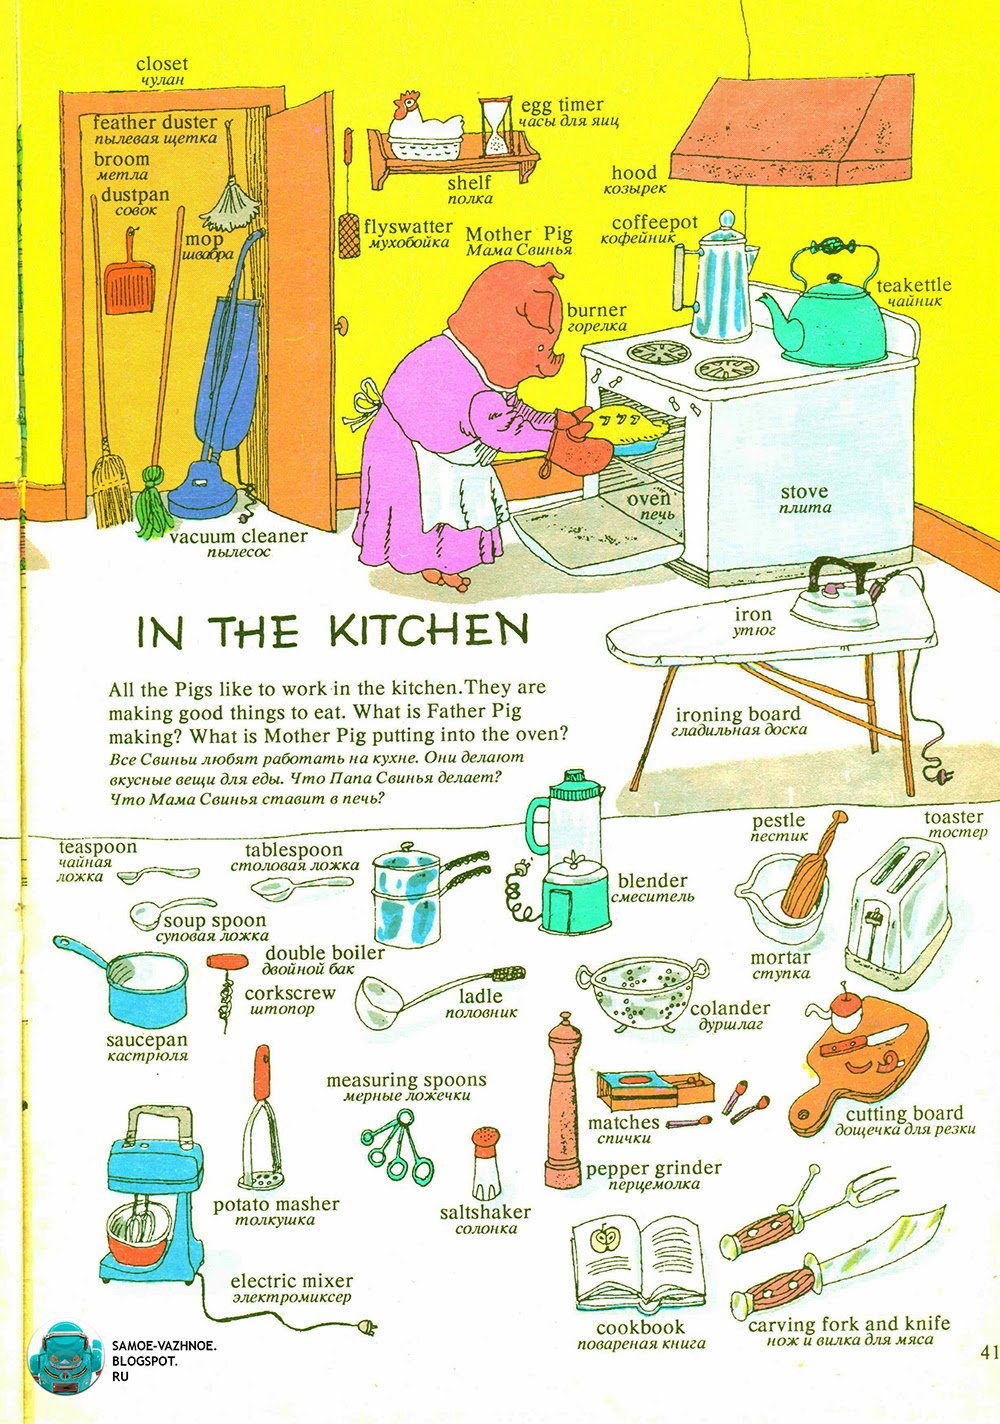 Правила на кухне на английском